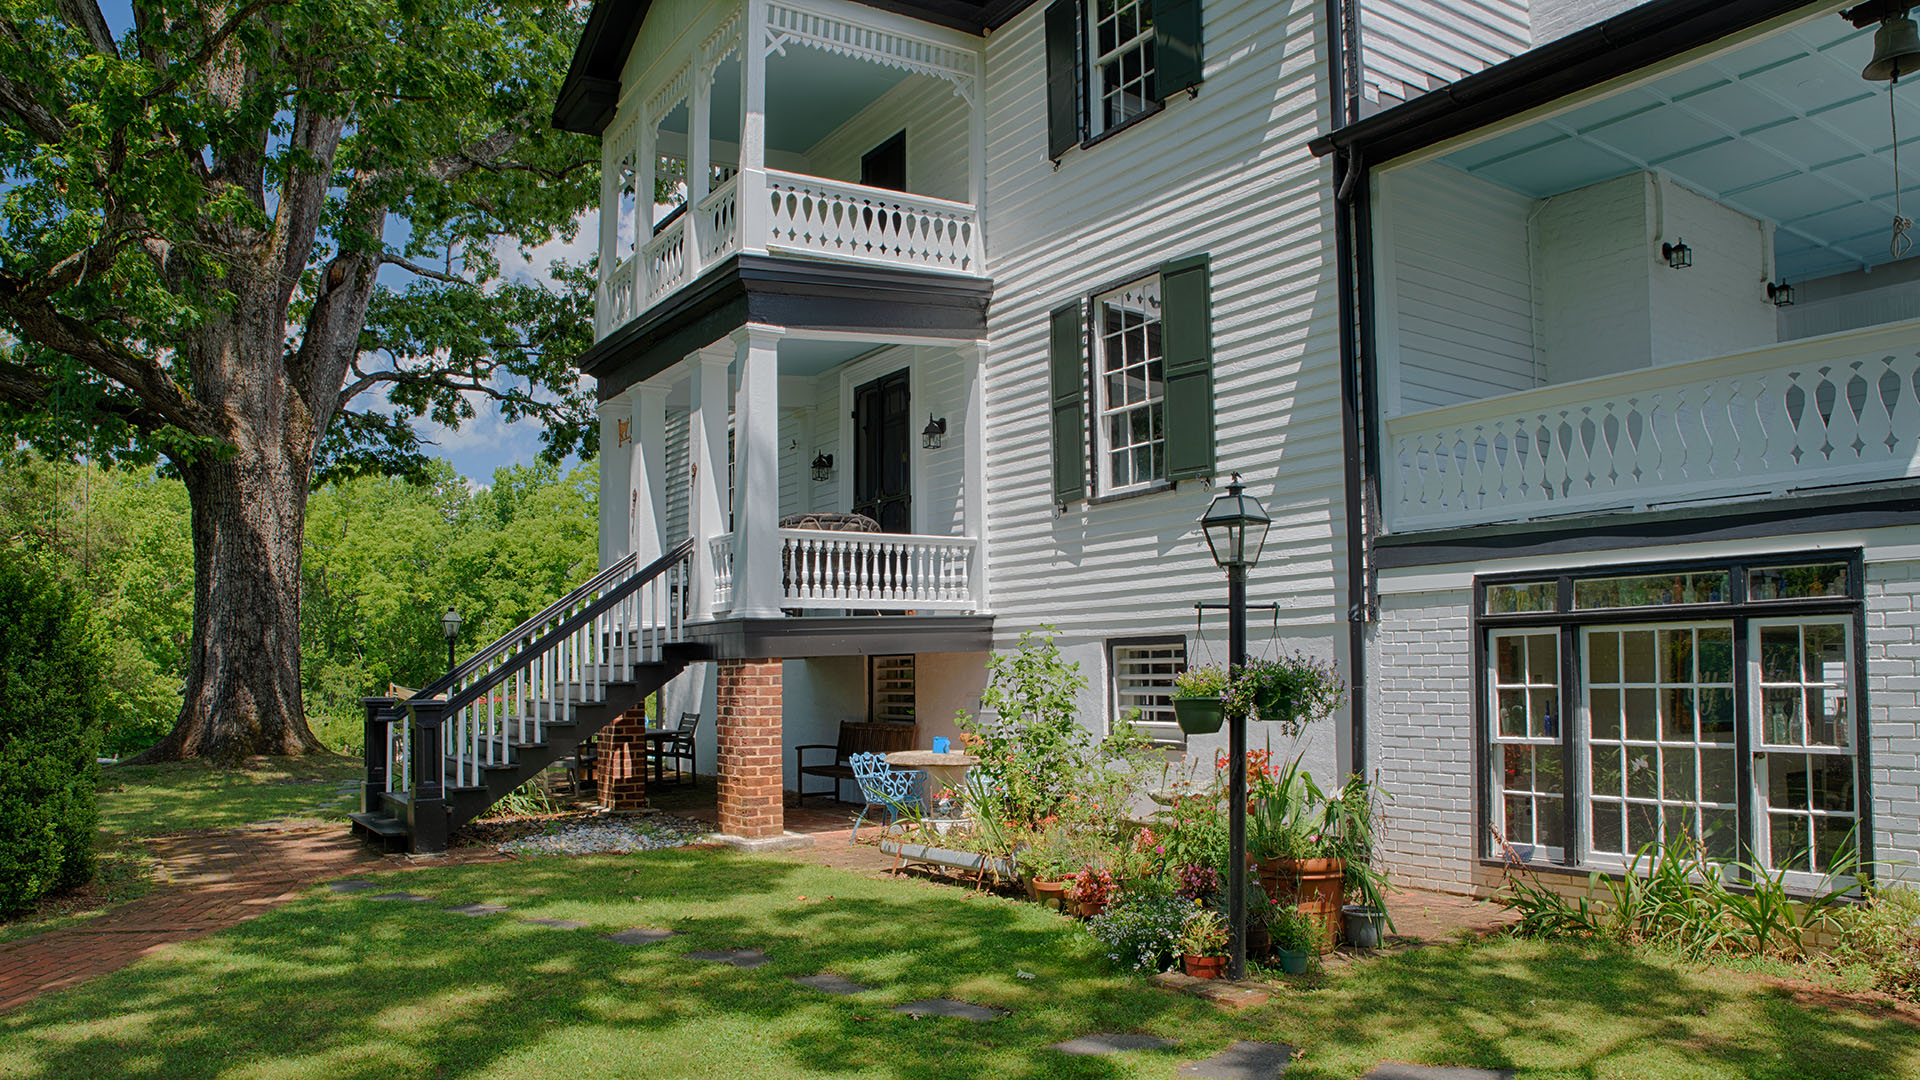 Fluvanna VA Historic Home for Sale